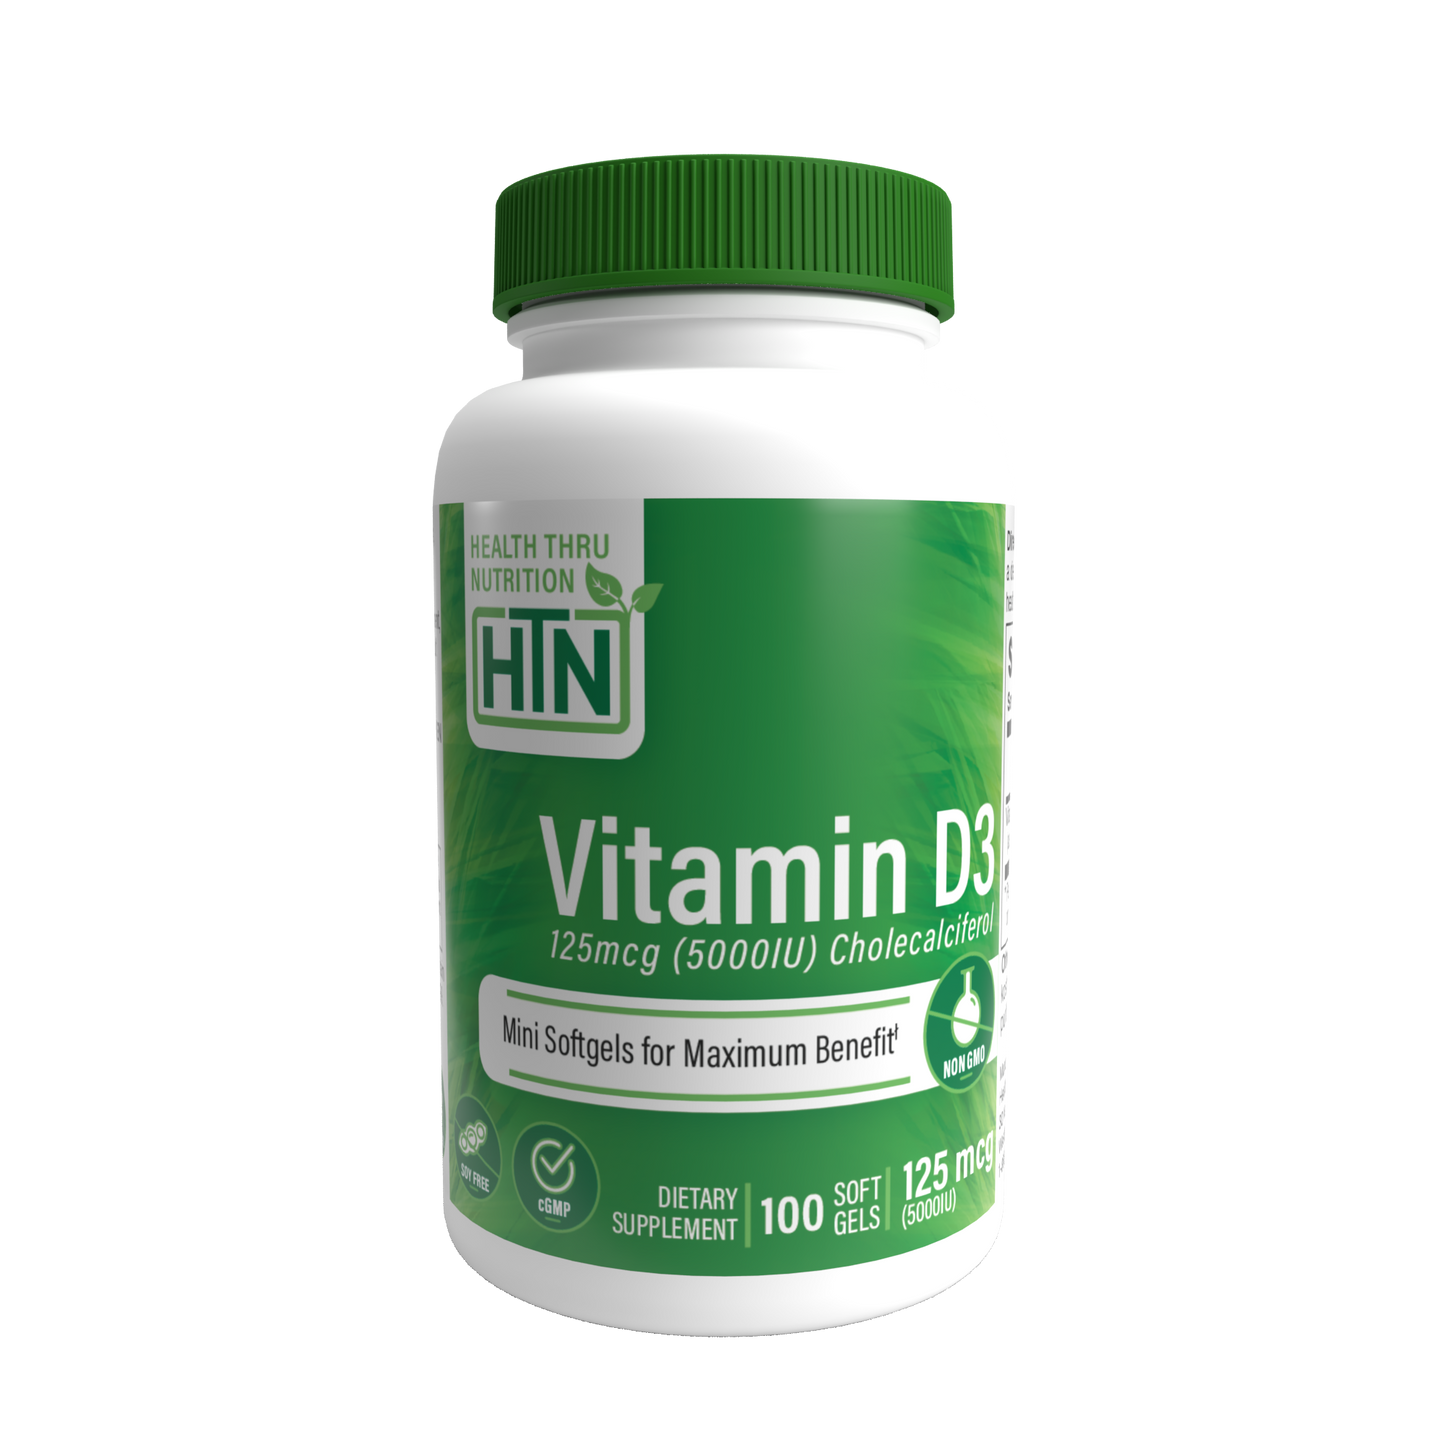 Health Thru Nutrition Vitamin D3 5,000iu (NON-GMO) 100 Softgels